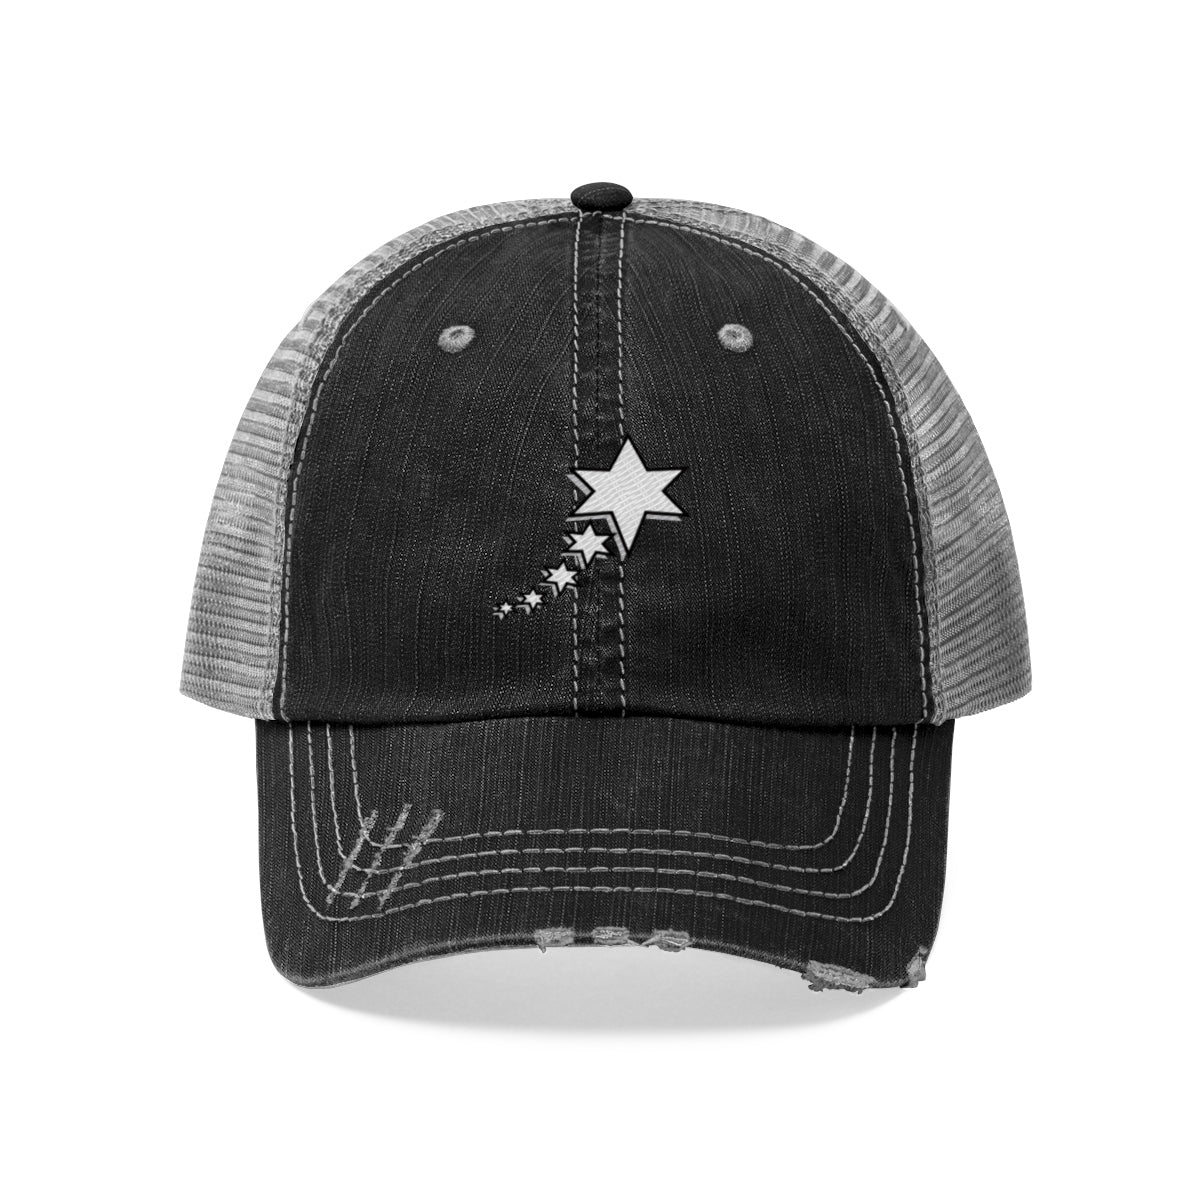 Unisex Trucker Hat - 6 Points 5 Stars (White)